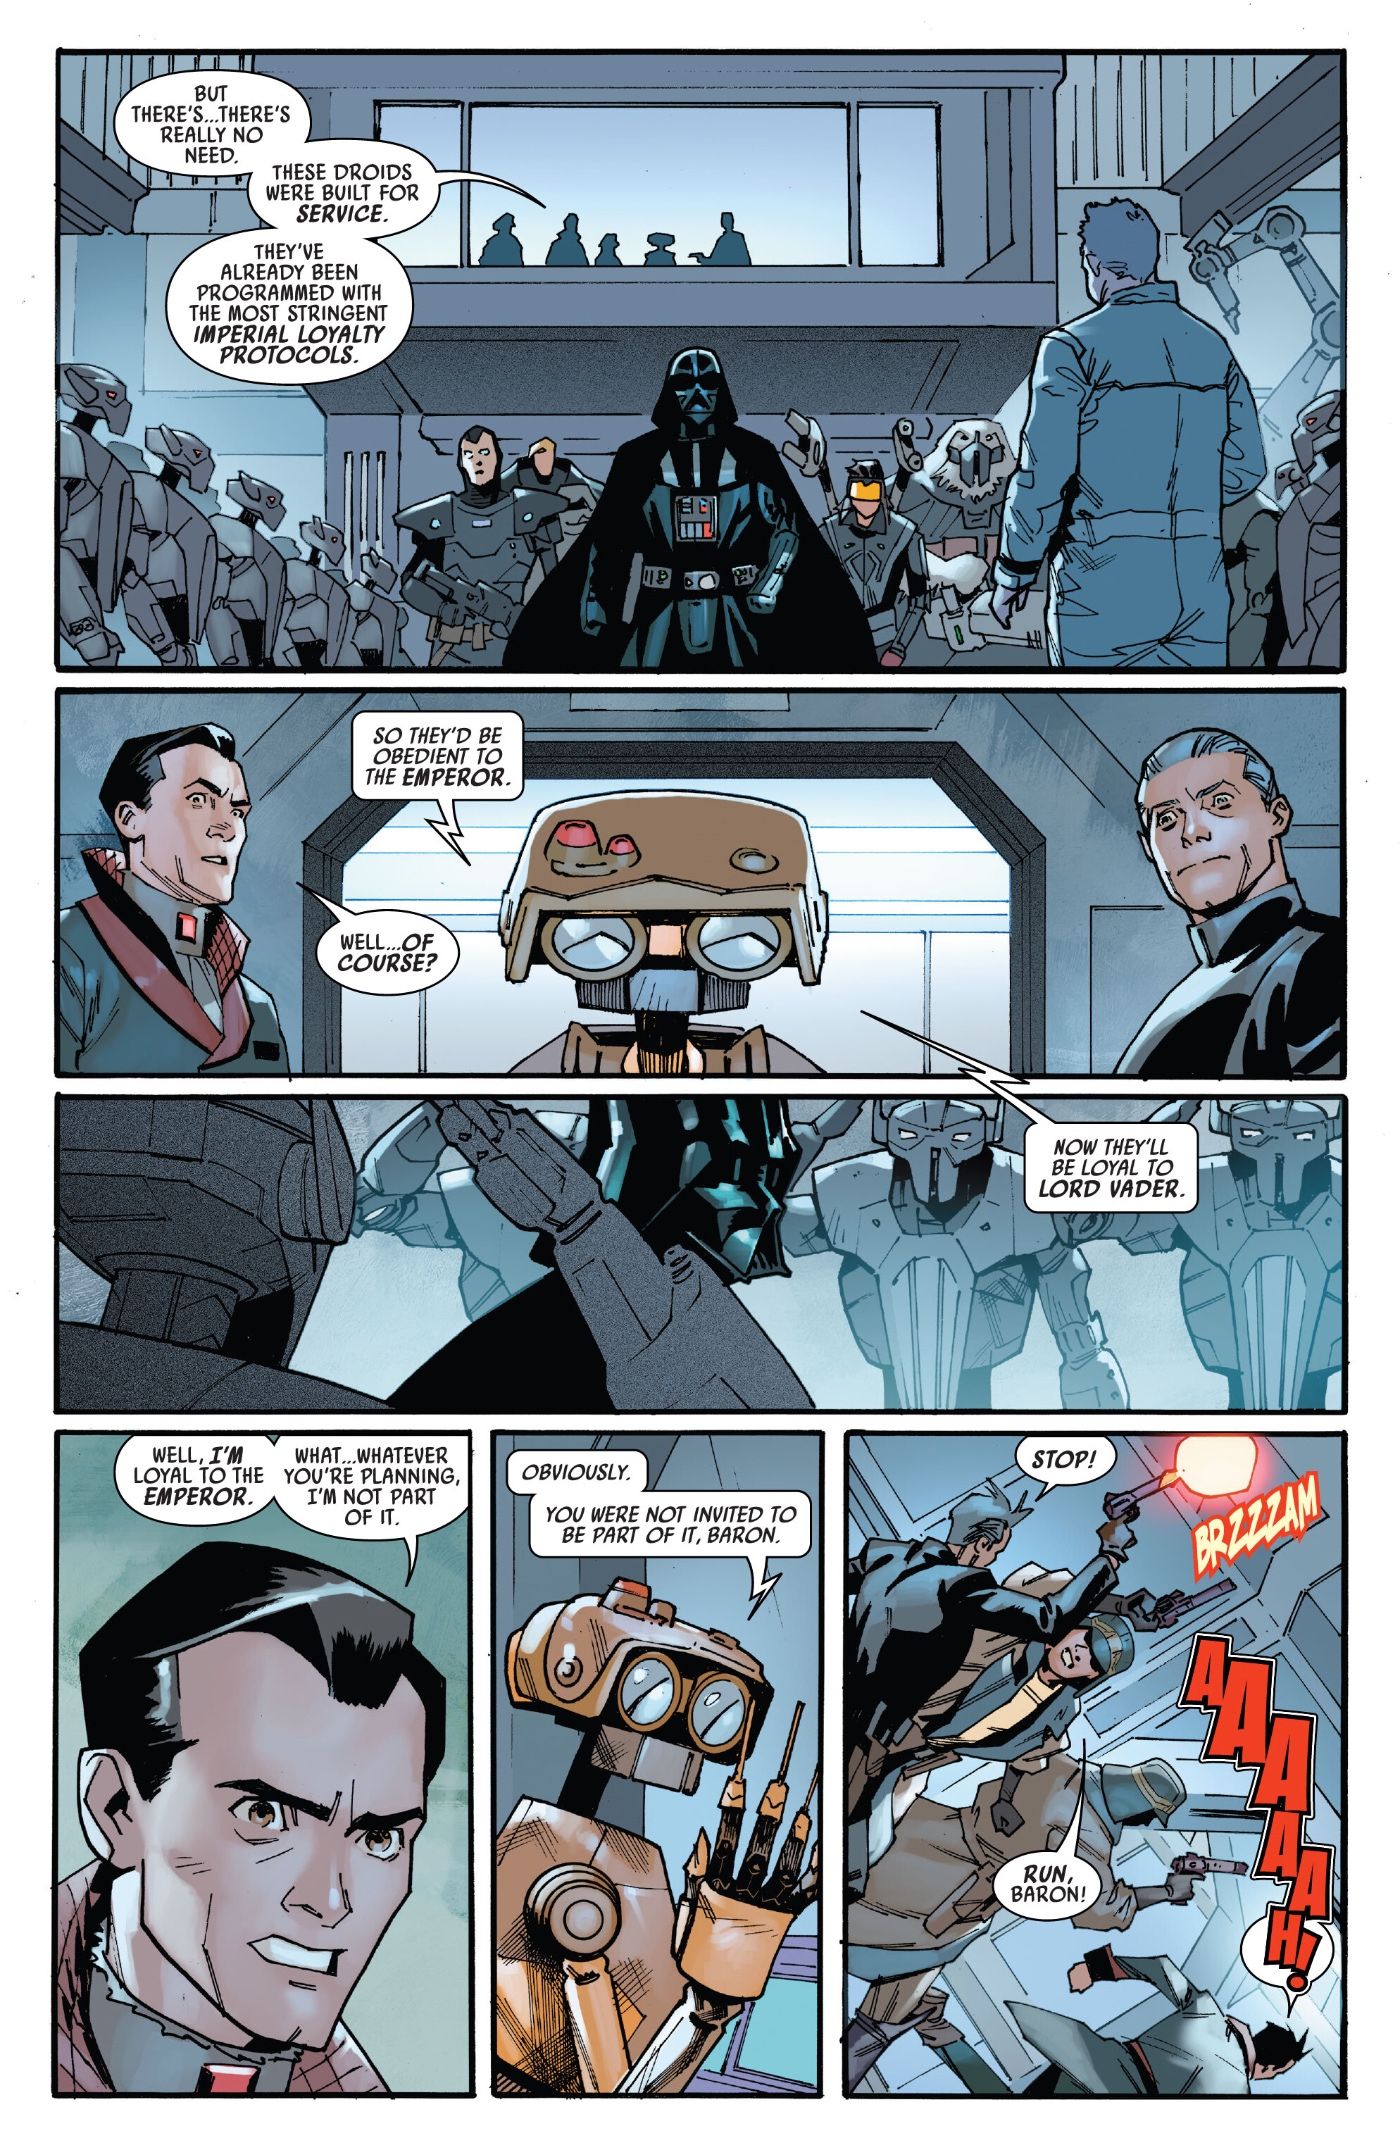 O novo exército droide de Vader em Darth Vader #44